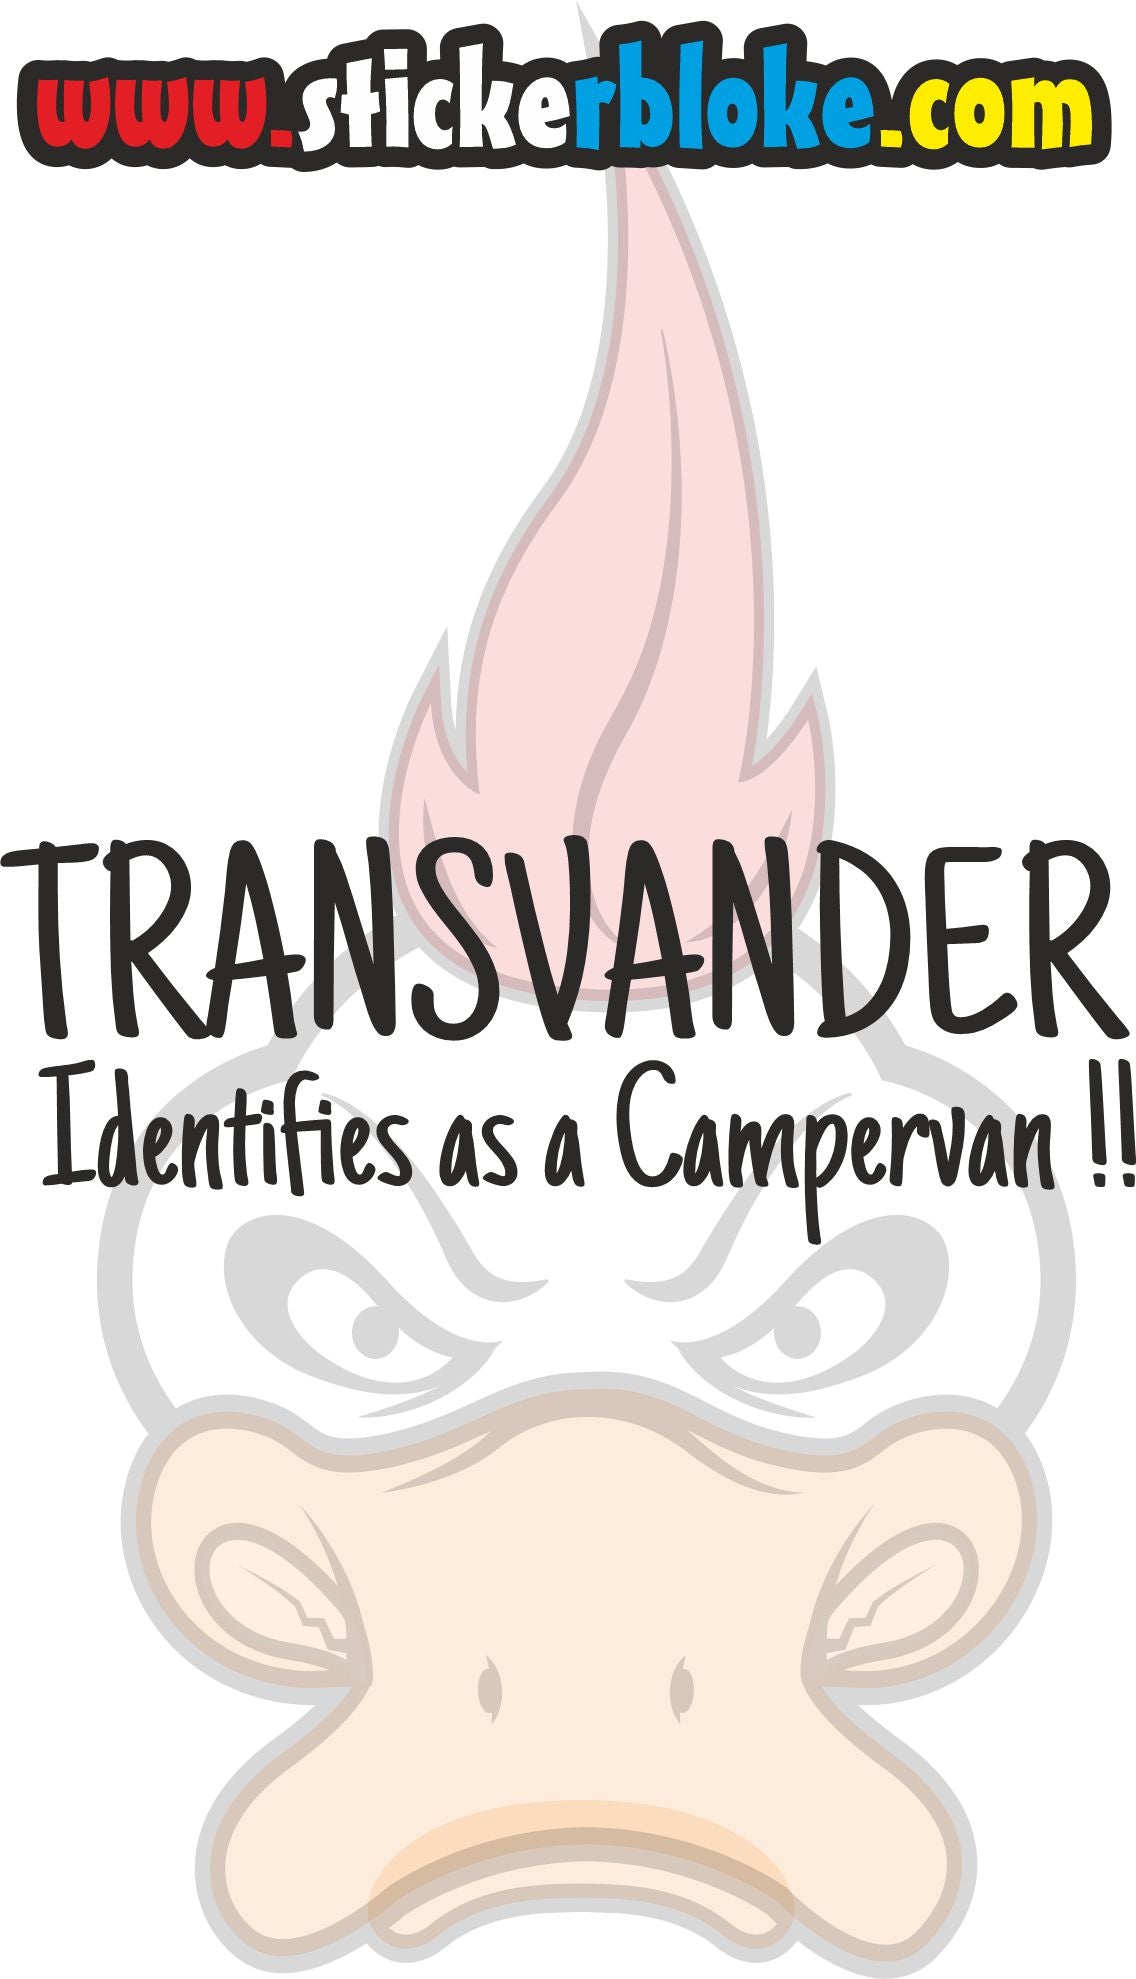 TRANSVANDER IDENTIFIES AS A CAMPERVAN STICKER